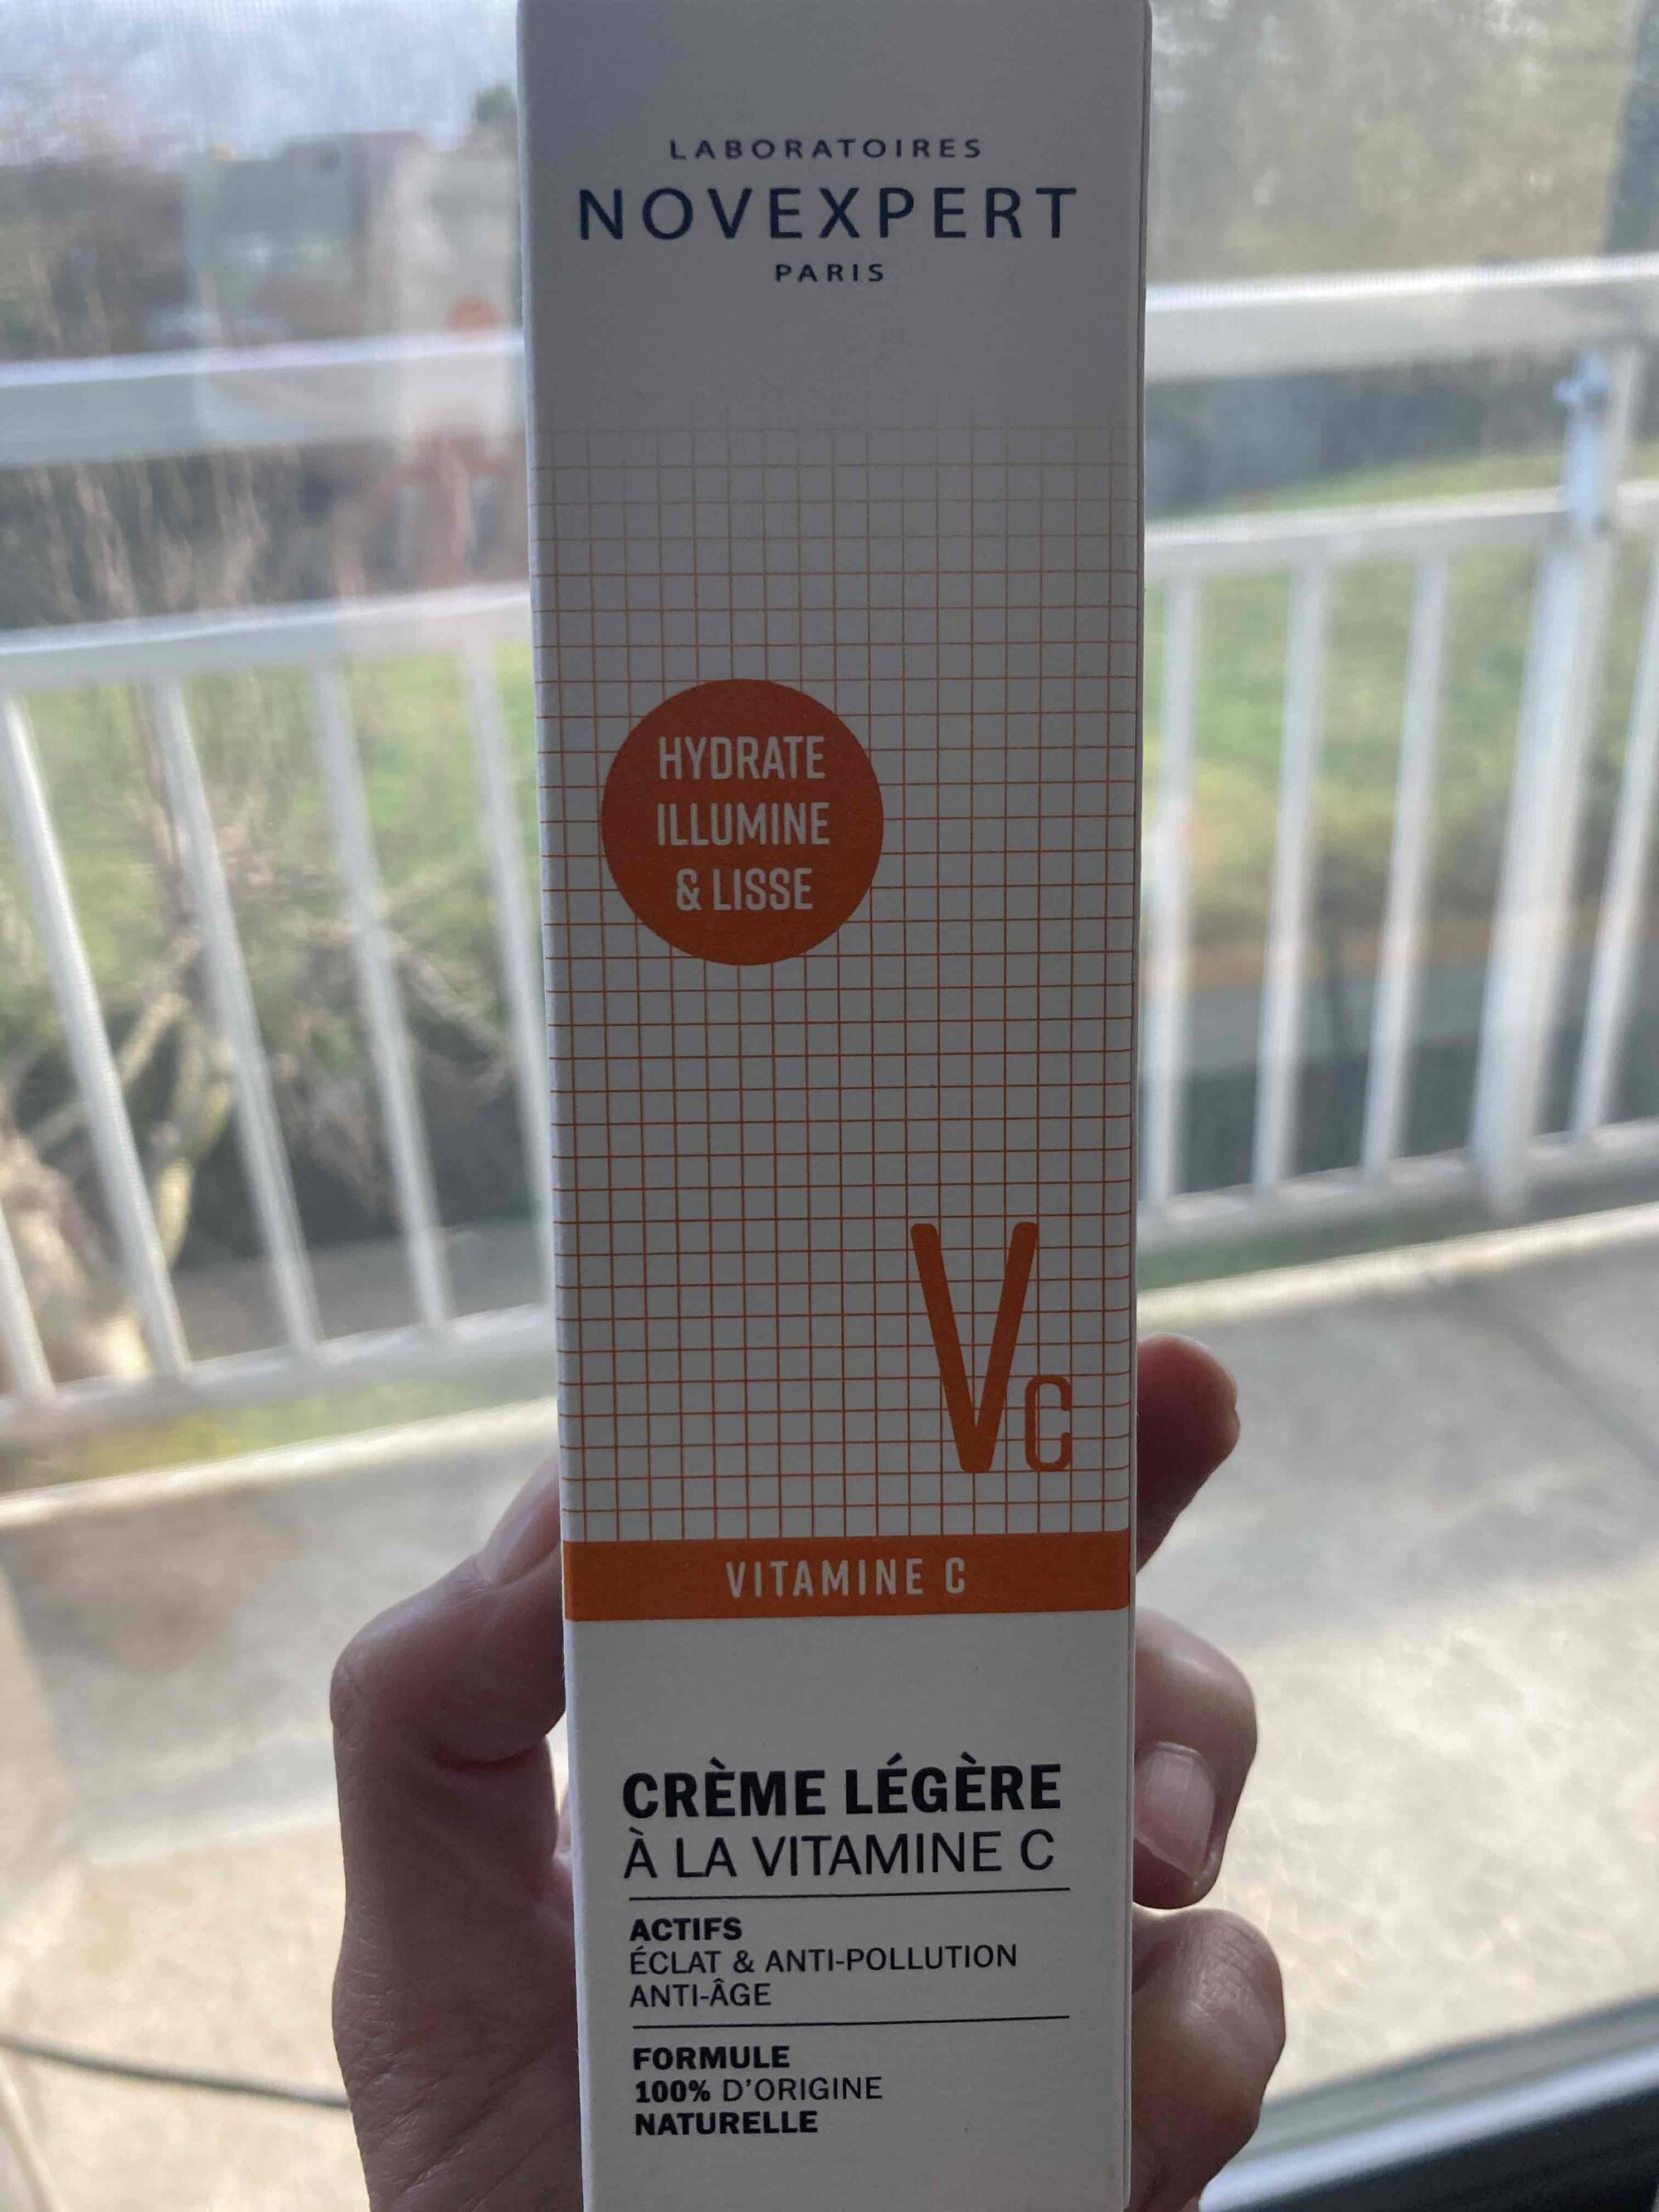 NOVEXPERT - Vc Hydrate illumine & lisse - Crème légère à la vitamine C